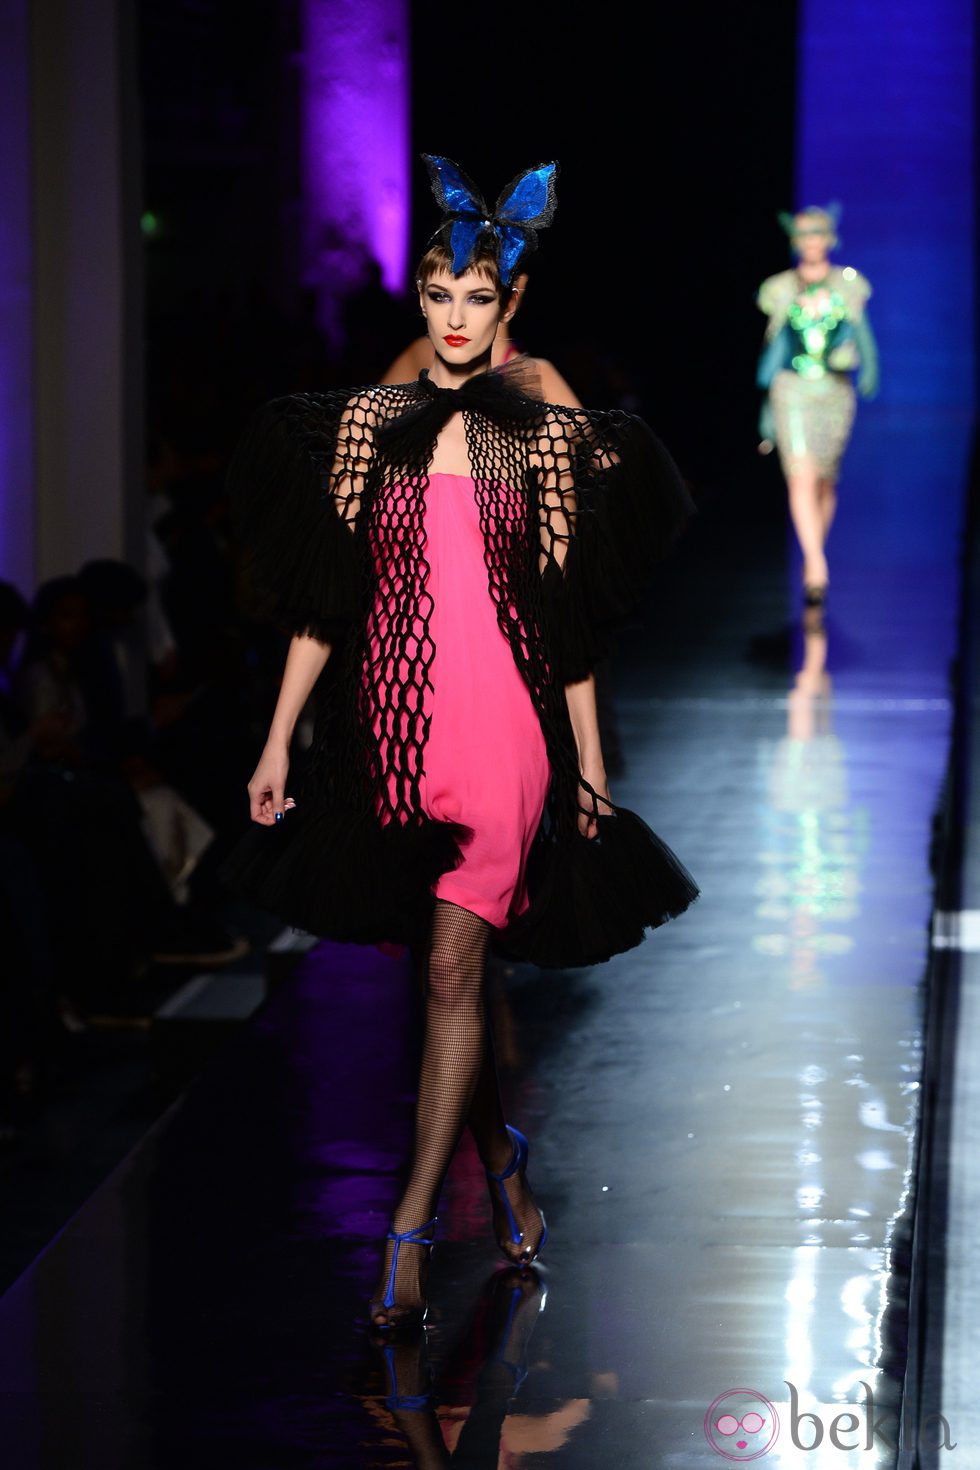 Vestido fucsia de la colección primavera/verano 2014 Alta Costura de Jean Paul Gaultier en la Semana de la Moda de París